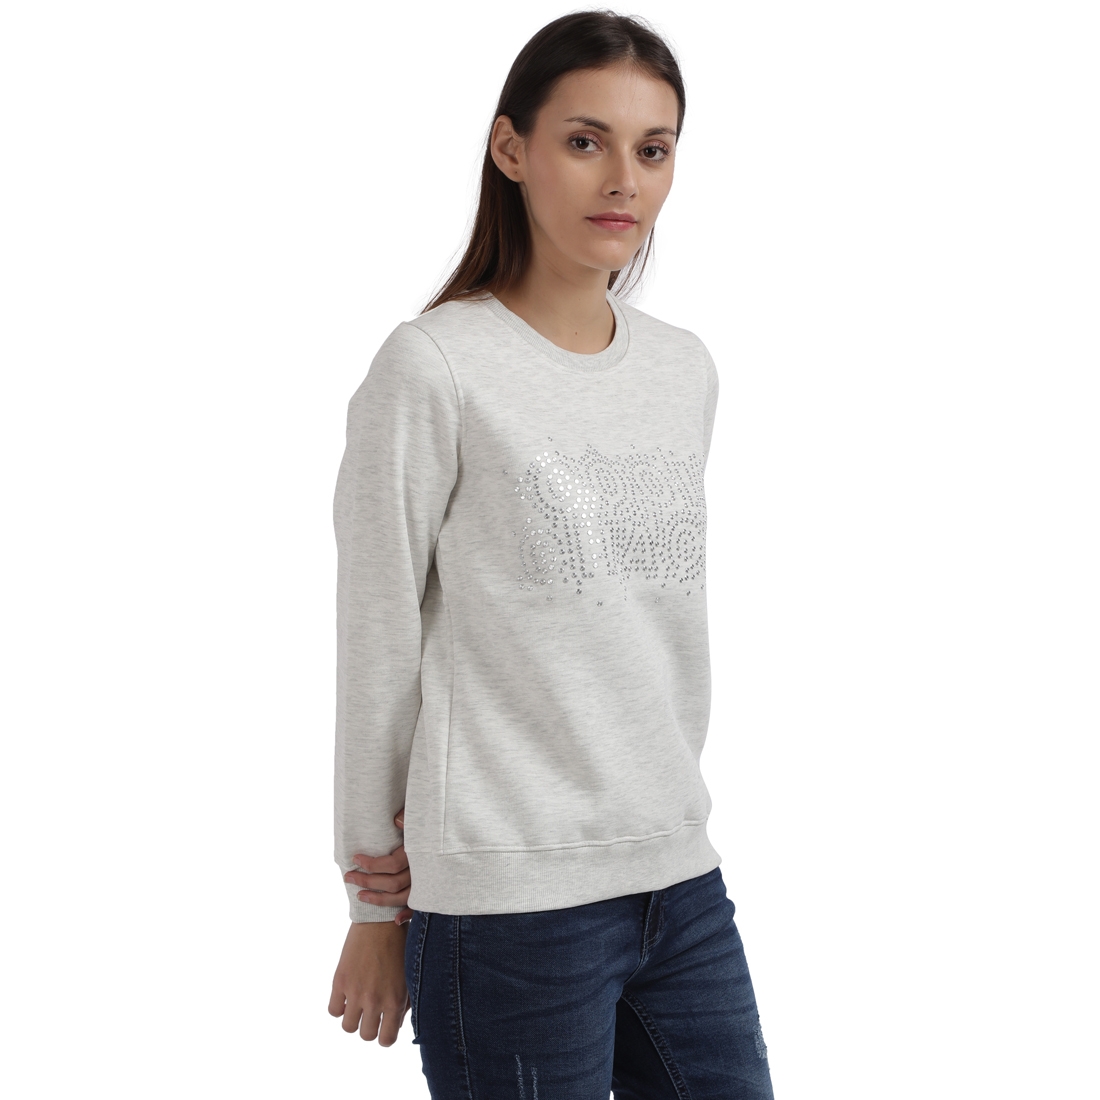 Parx Woman | Parx Woman White Sweatshirt 1